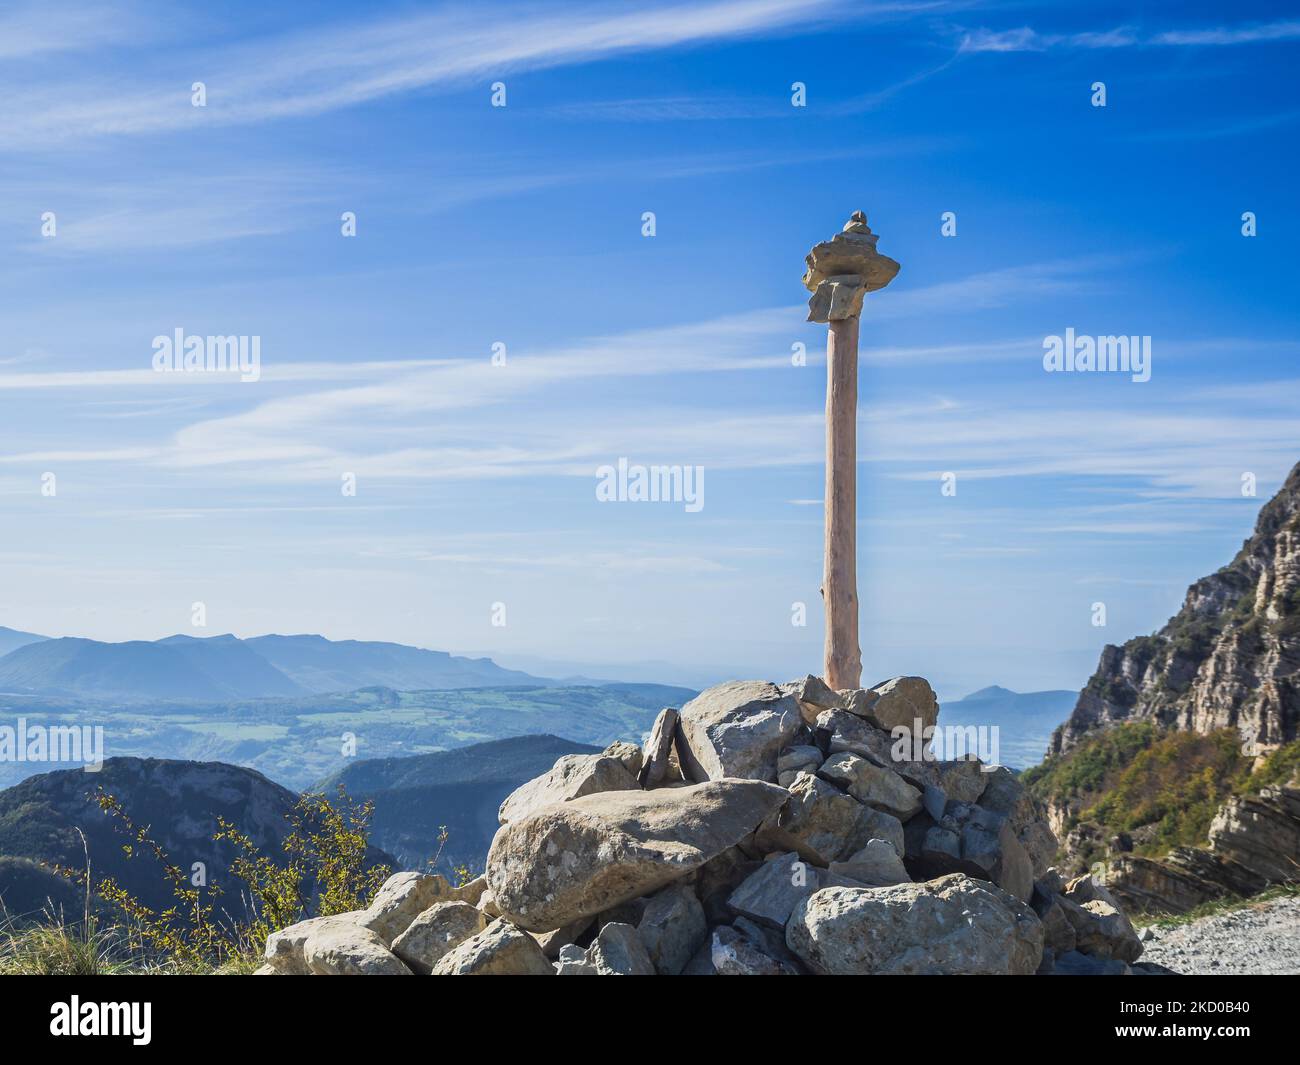 Steinturm mit einem Baumzweig auf einem Berg in den alpen mit Blick auf die umliegenden Berge Stockfoto